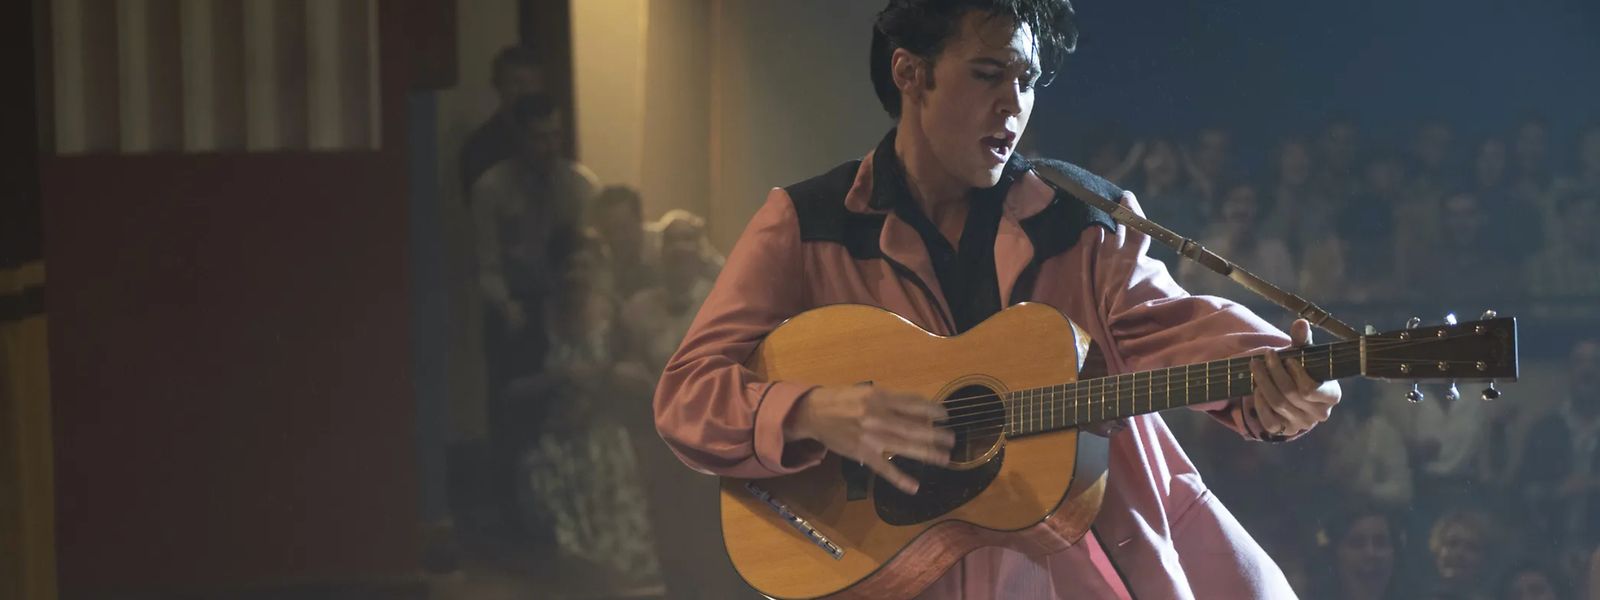 Baz Luhrmanns musikalische Biografie über das Leben und die Karriere des Rock'n'Roll-Königs Elvis Presley feierte bei den Filmfestspielen von Cannes seine Weltpremiere.